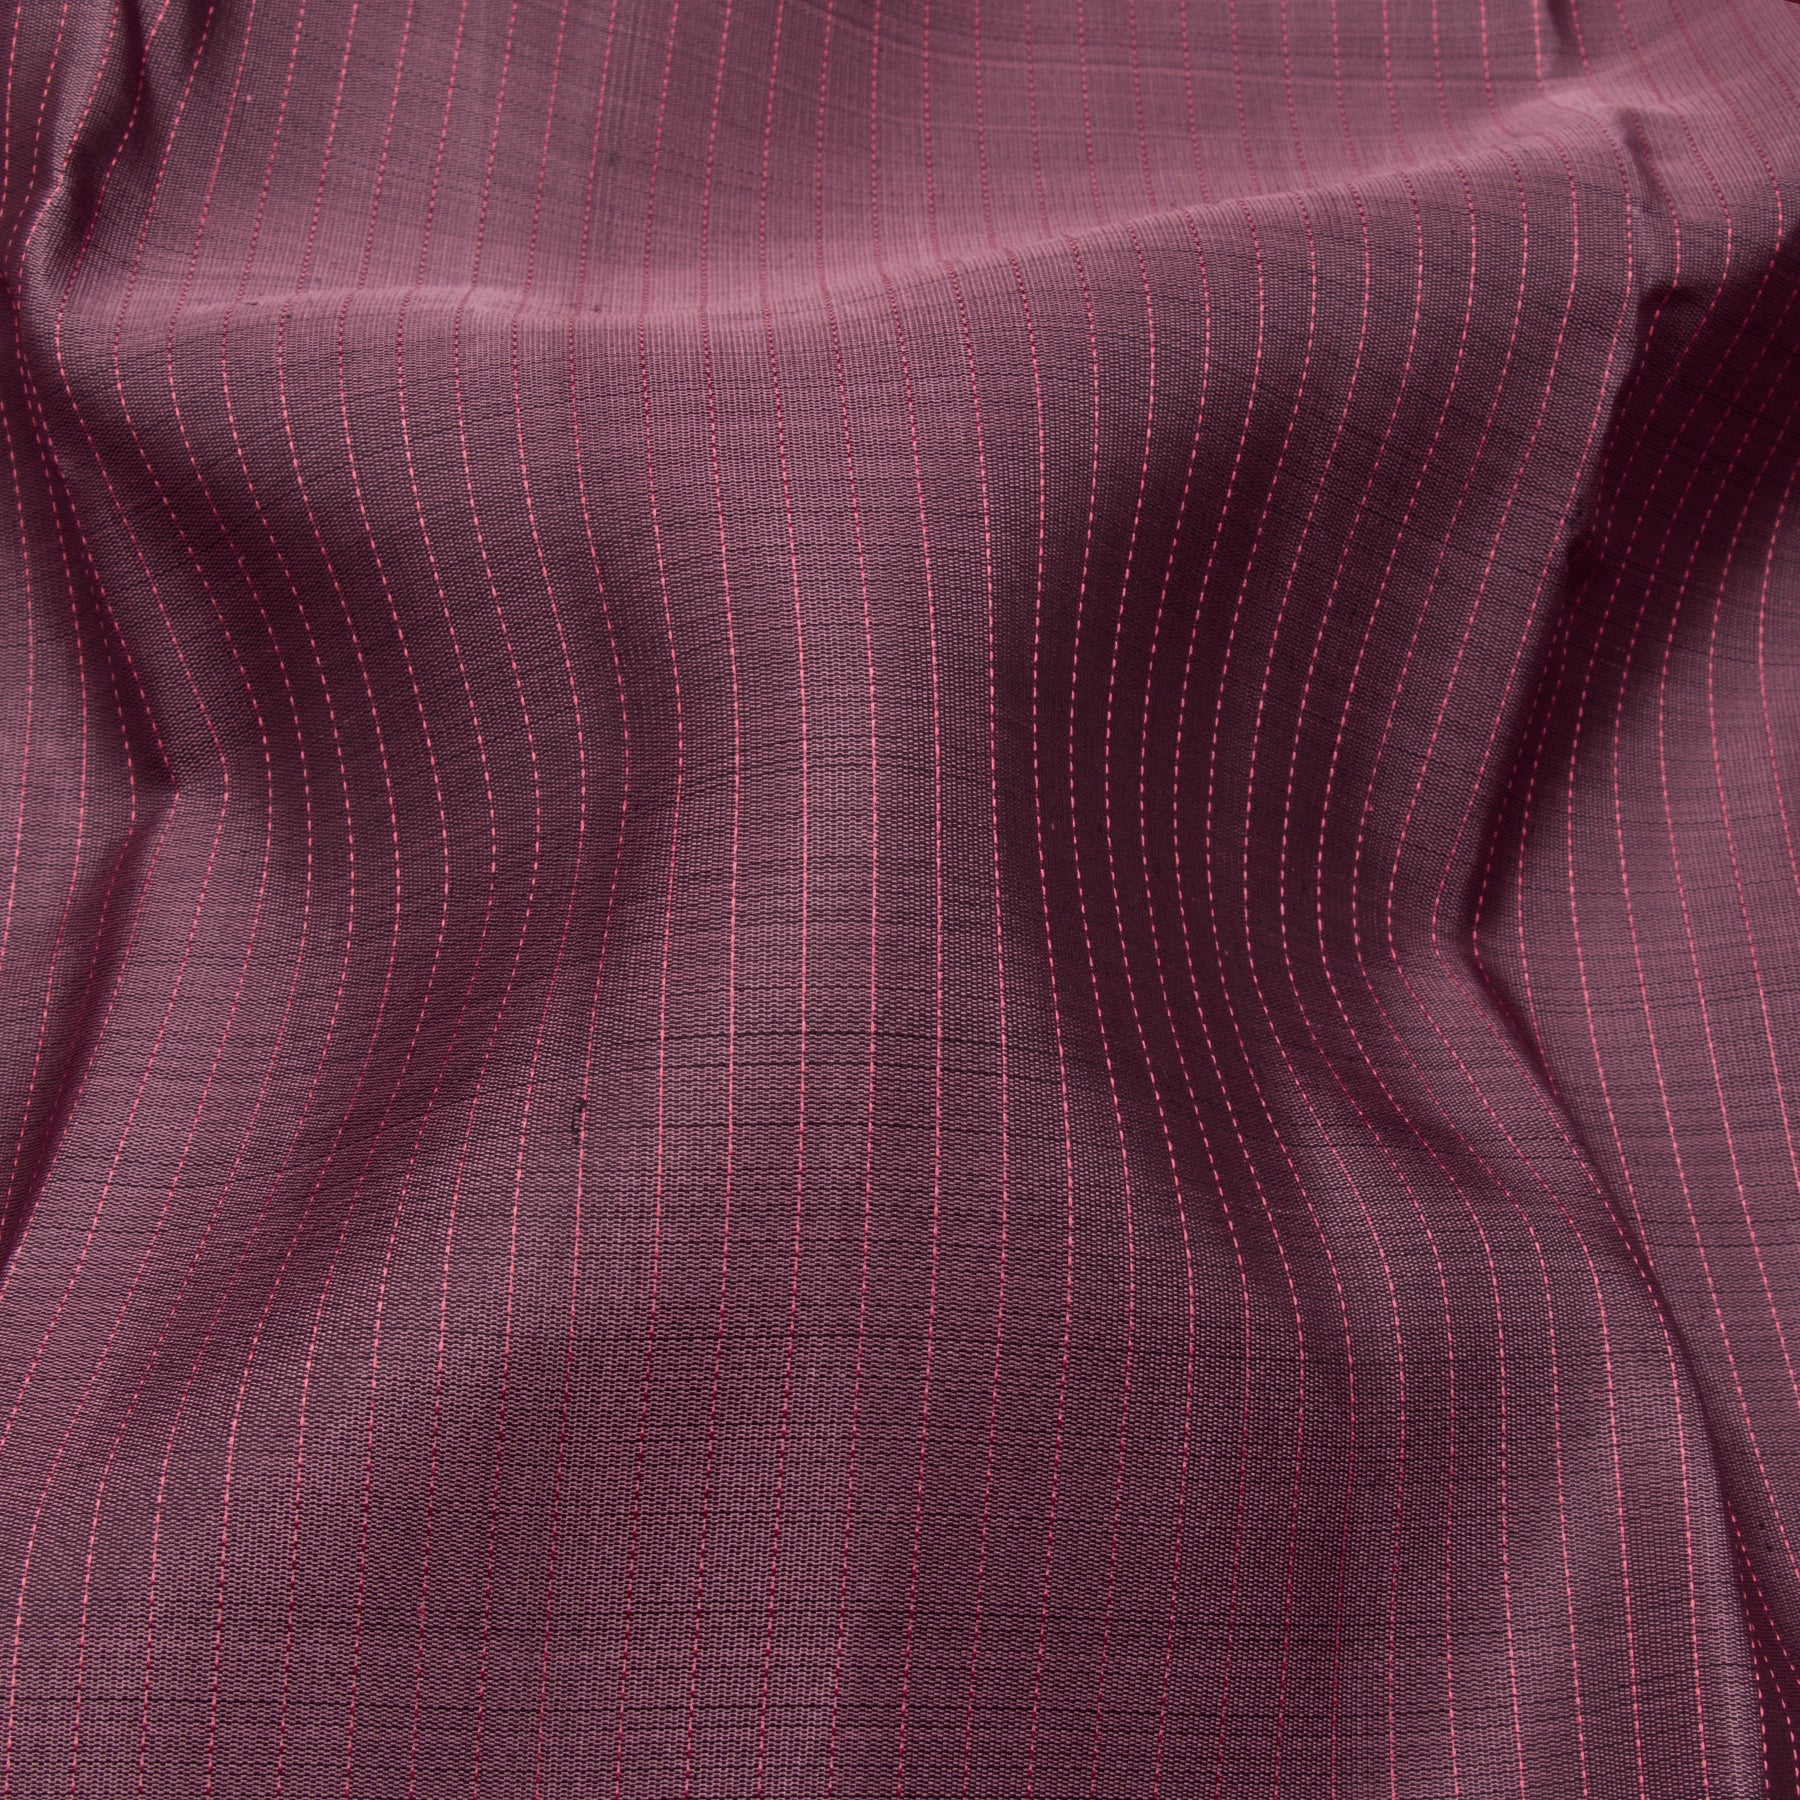 Kanakavalli Kanjivaram Silk Sari 23-599-HS001-11156 - Fabric View